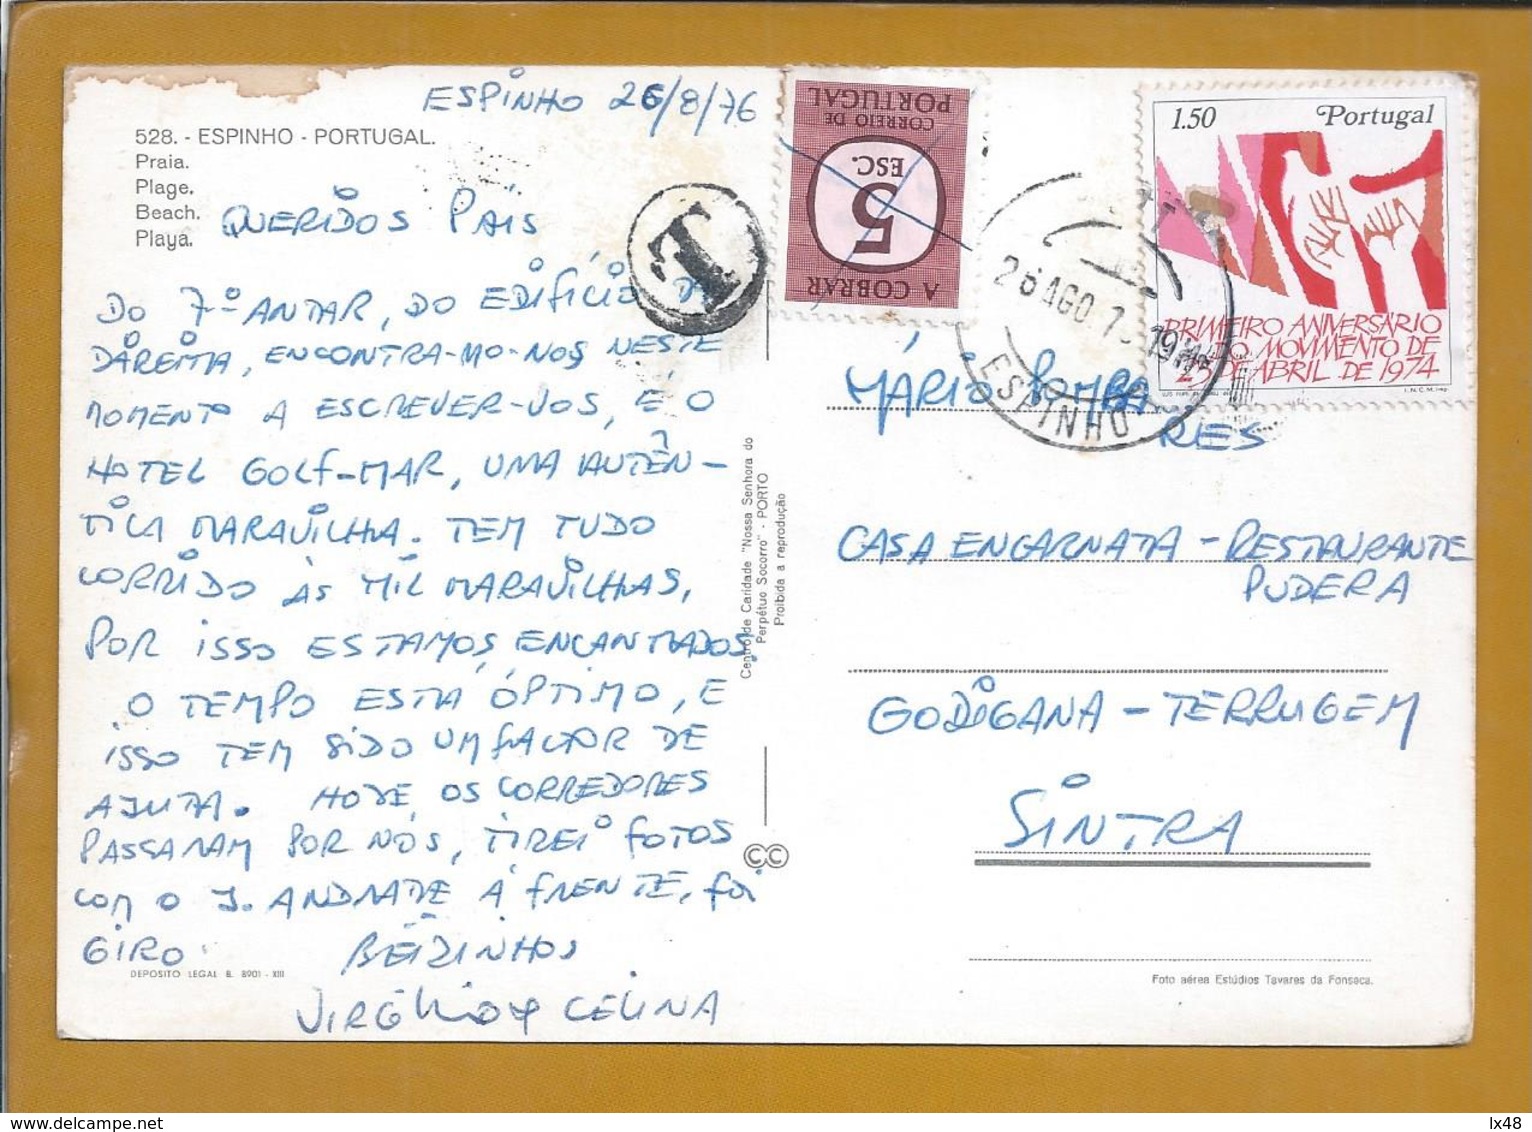 Postcard Fined Circled 1975, Espinho. Stamp Revolution April 25th. Postal Porteado E Expedido De Espinho / Terrugem - Storia Postale